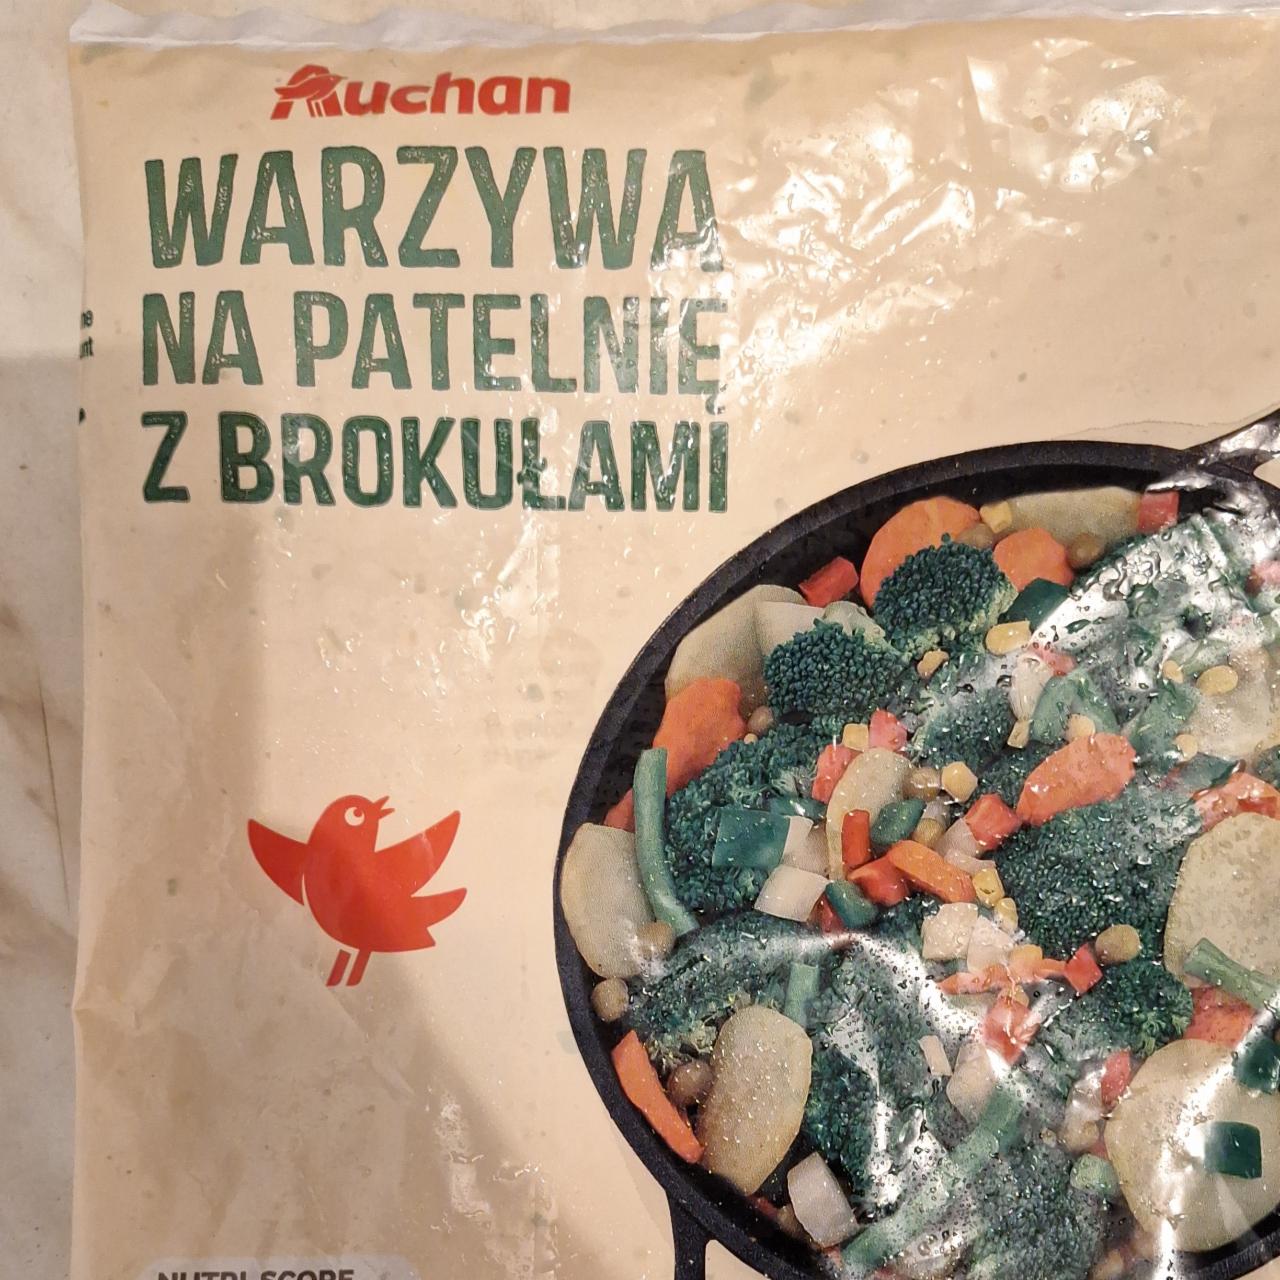 Фото - овощная смесь с брокколи Warzywa na patelnię z brokułami Auchan